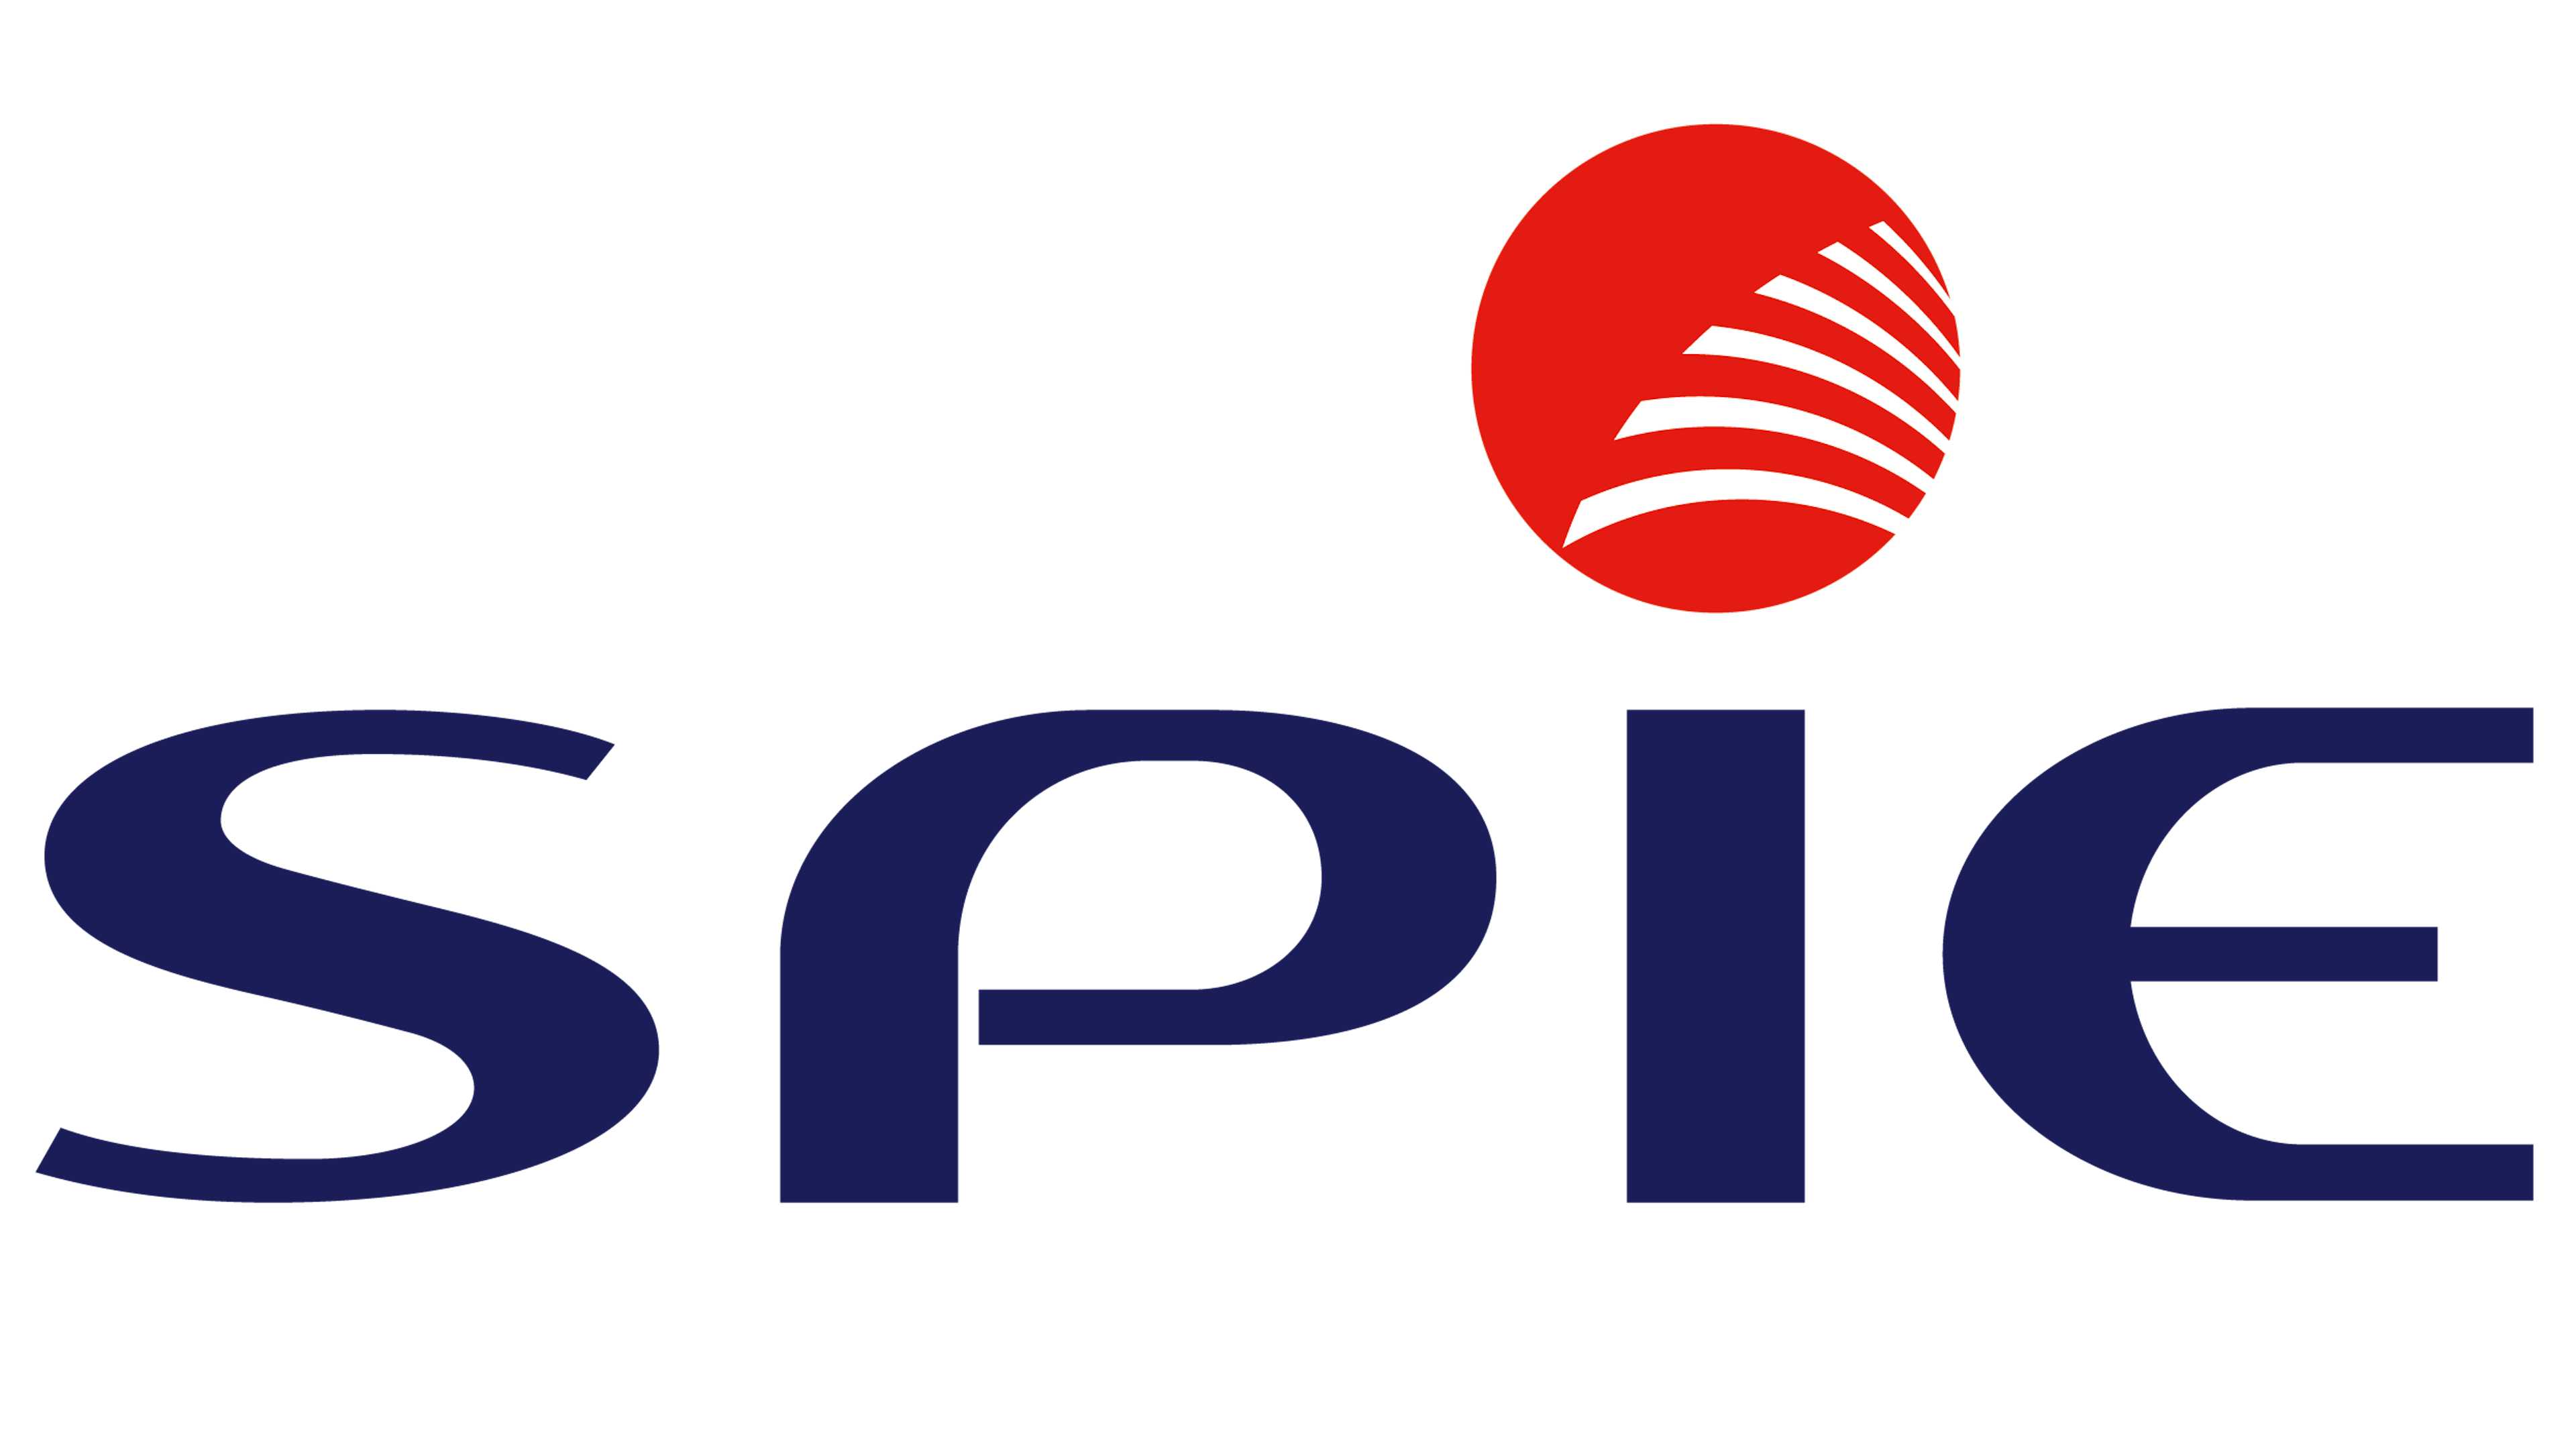 Logo Spie